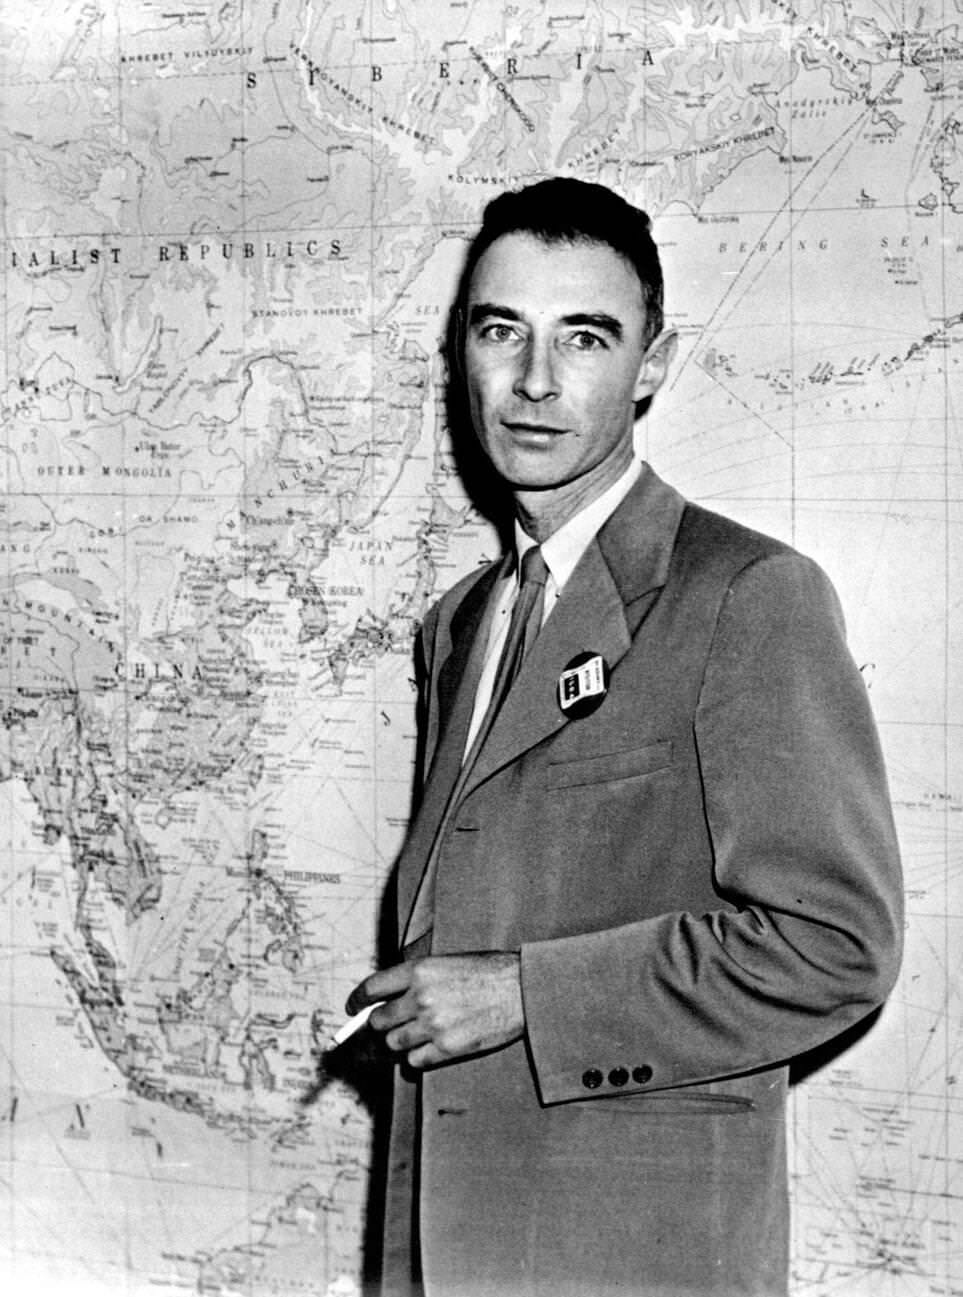 Dr. J. Robert Oppenheimer, t Princeton, NJ, August 22, 1950.